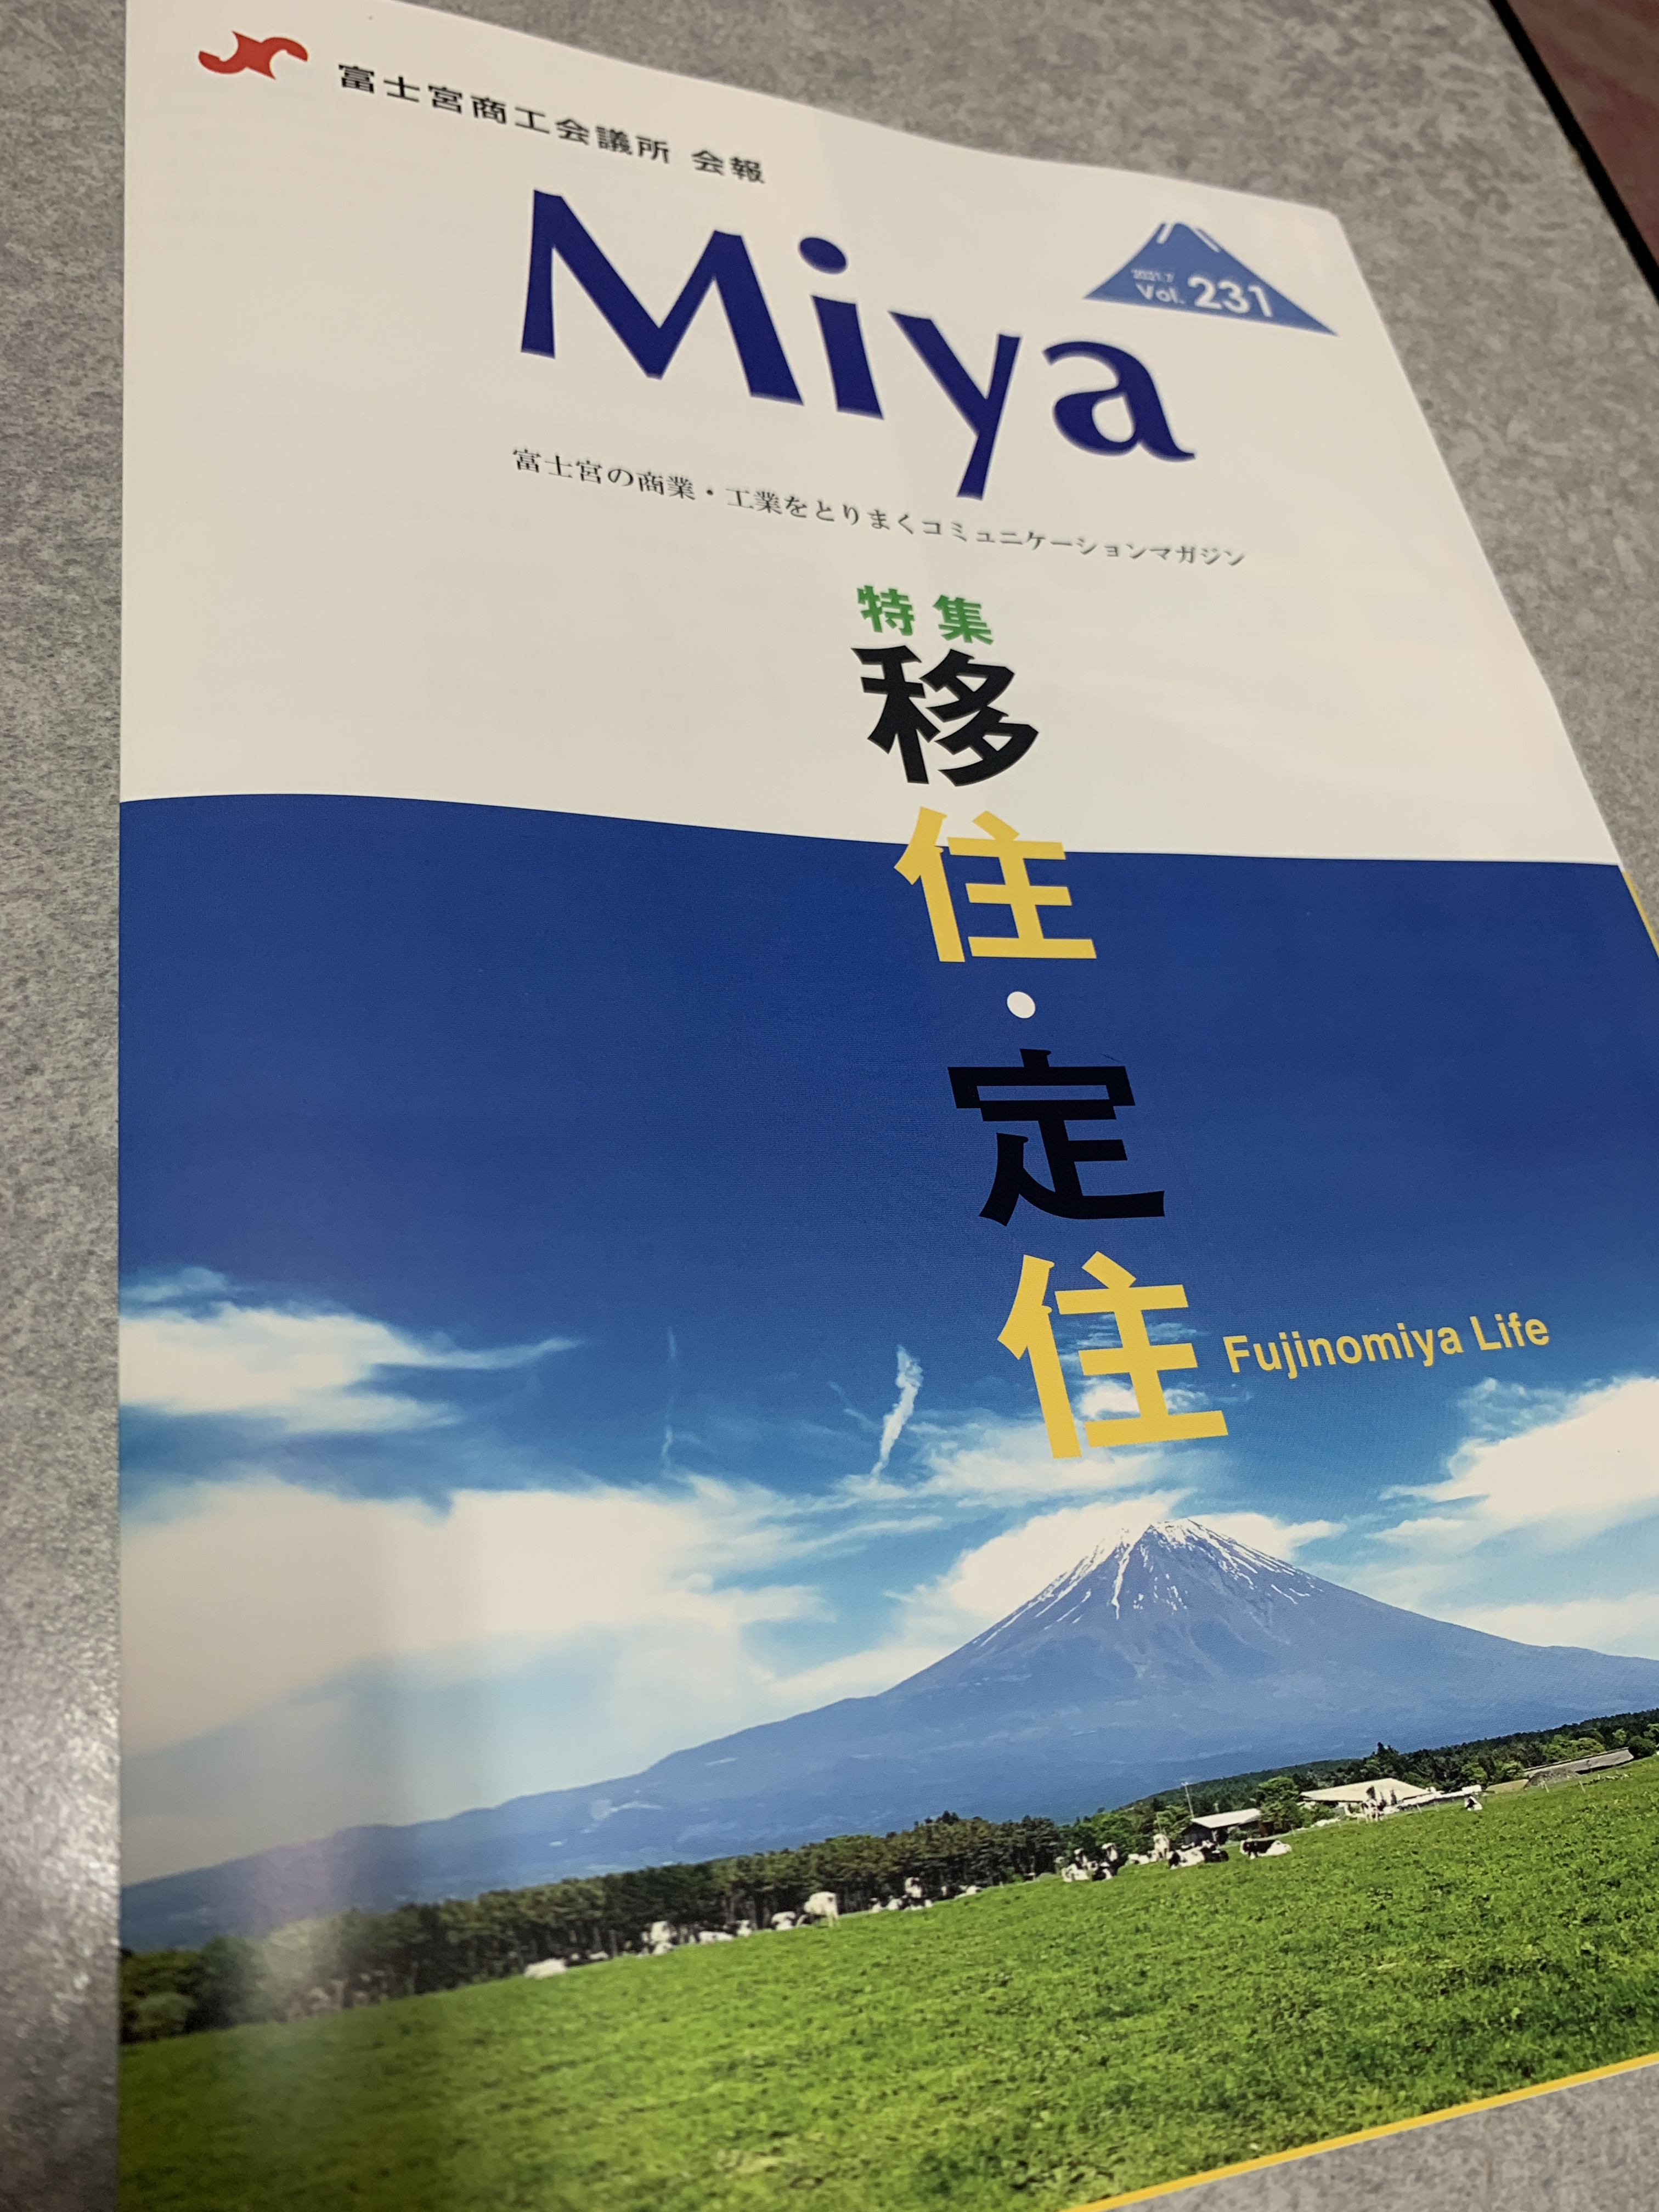 富士宮商工会議所　会報誌Miyaの特集で掲載されました（2021.7.1発行）